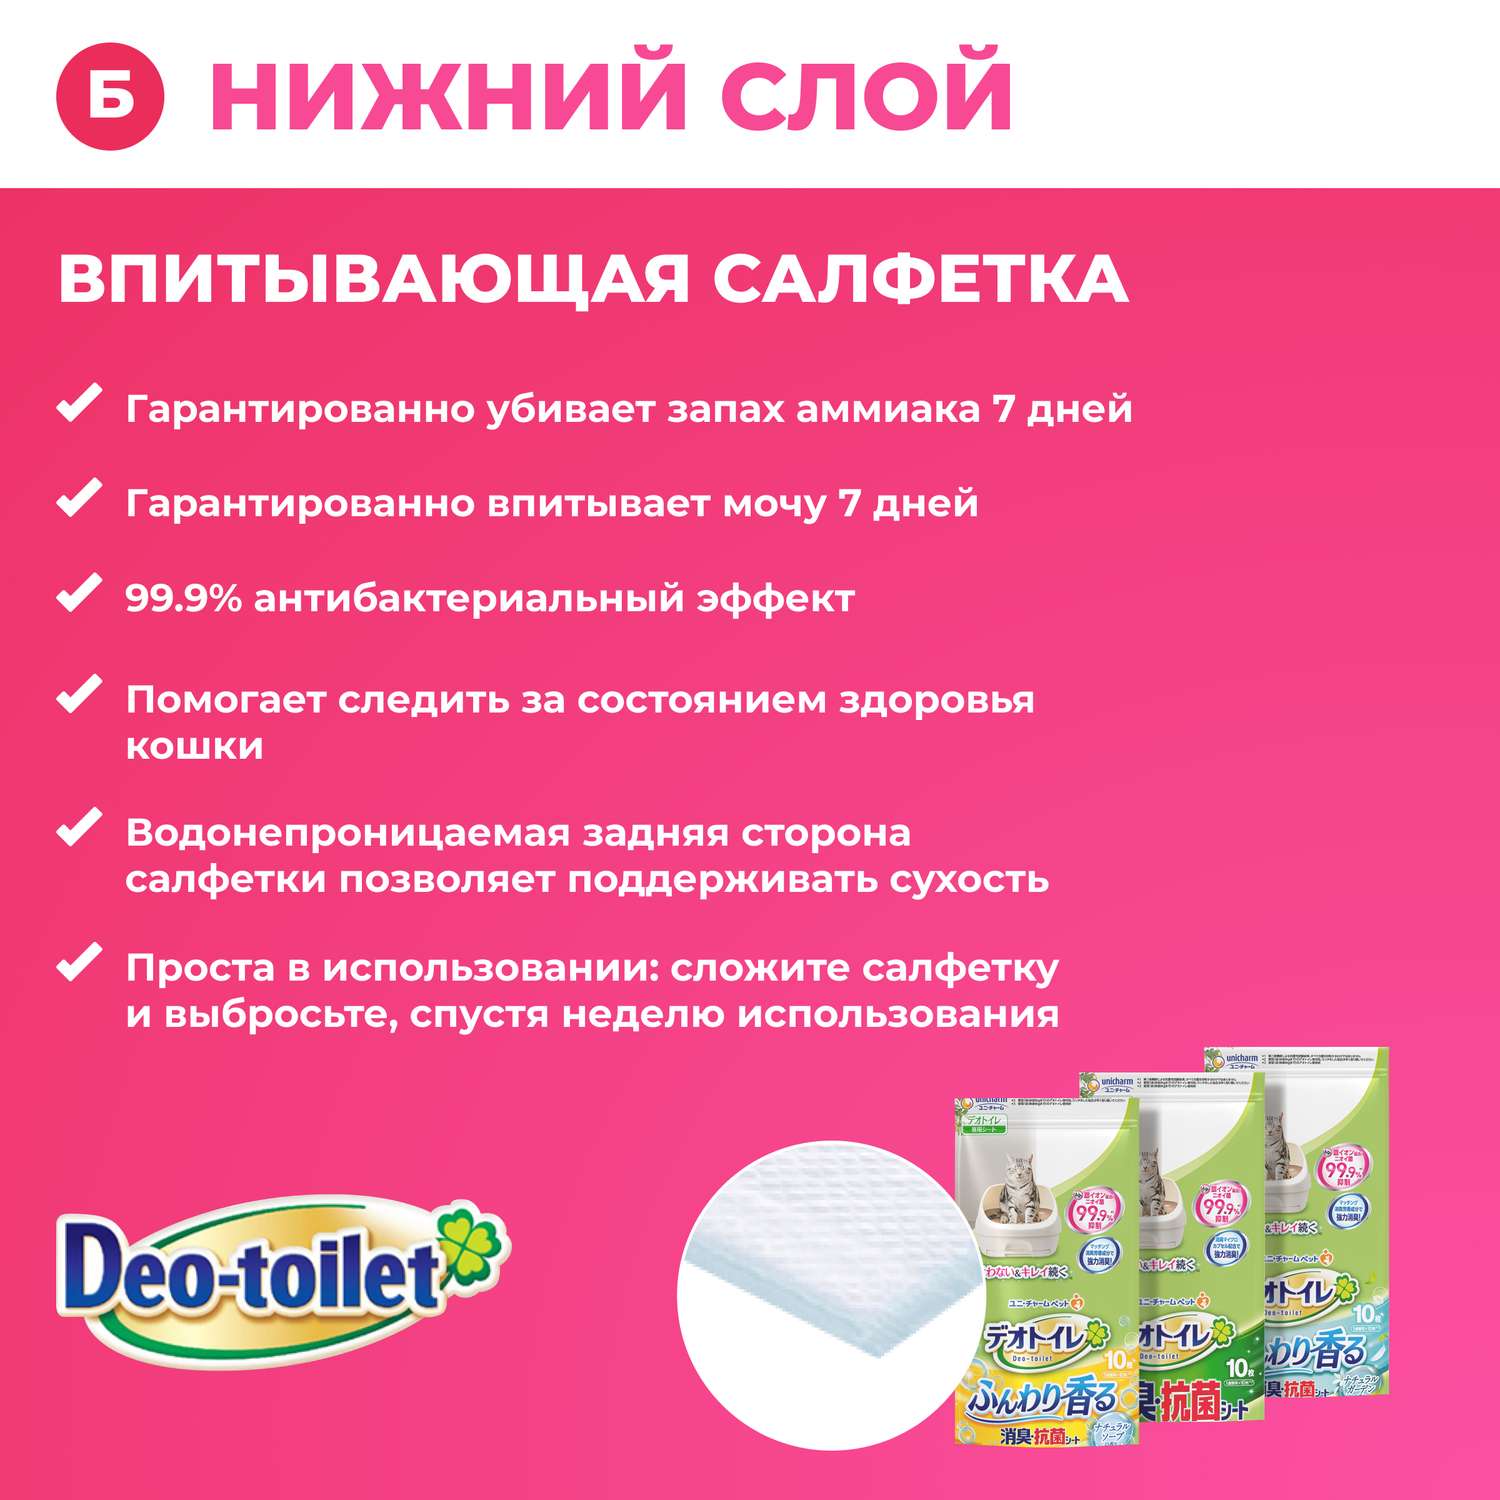 Антибактериальная салфетка Unicharm дезодорирующая для cистемных туалетов с ароматом душистого мыла 10 шт - фото 2